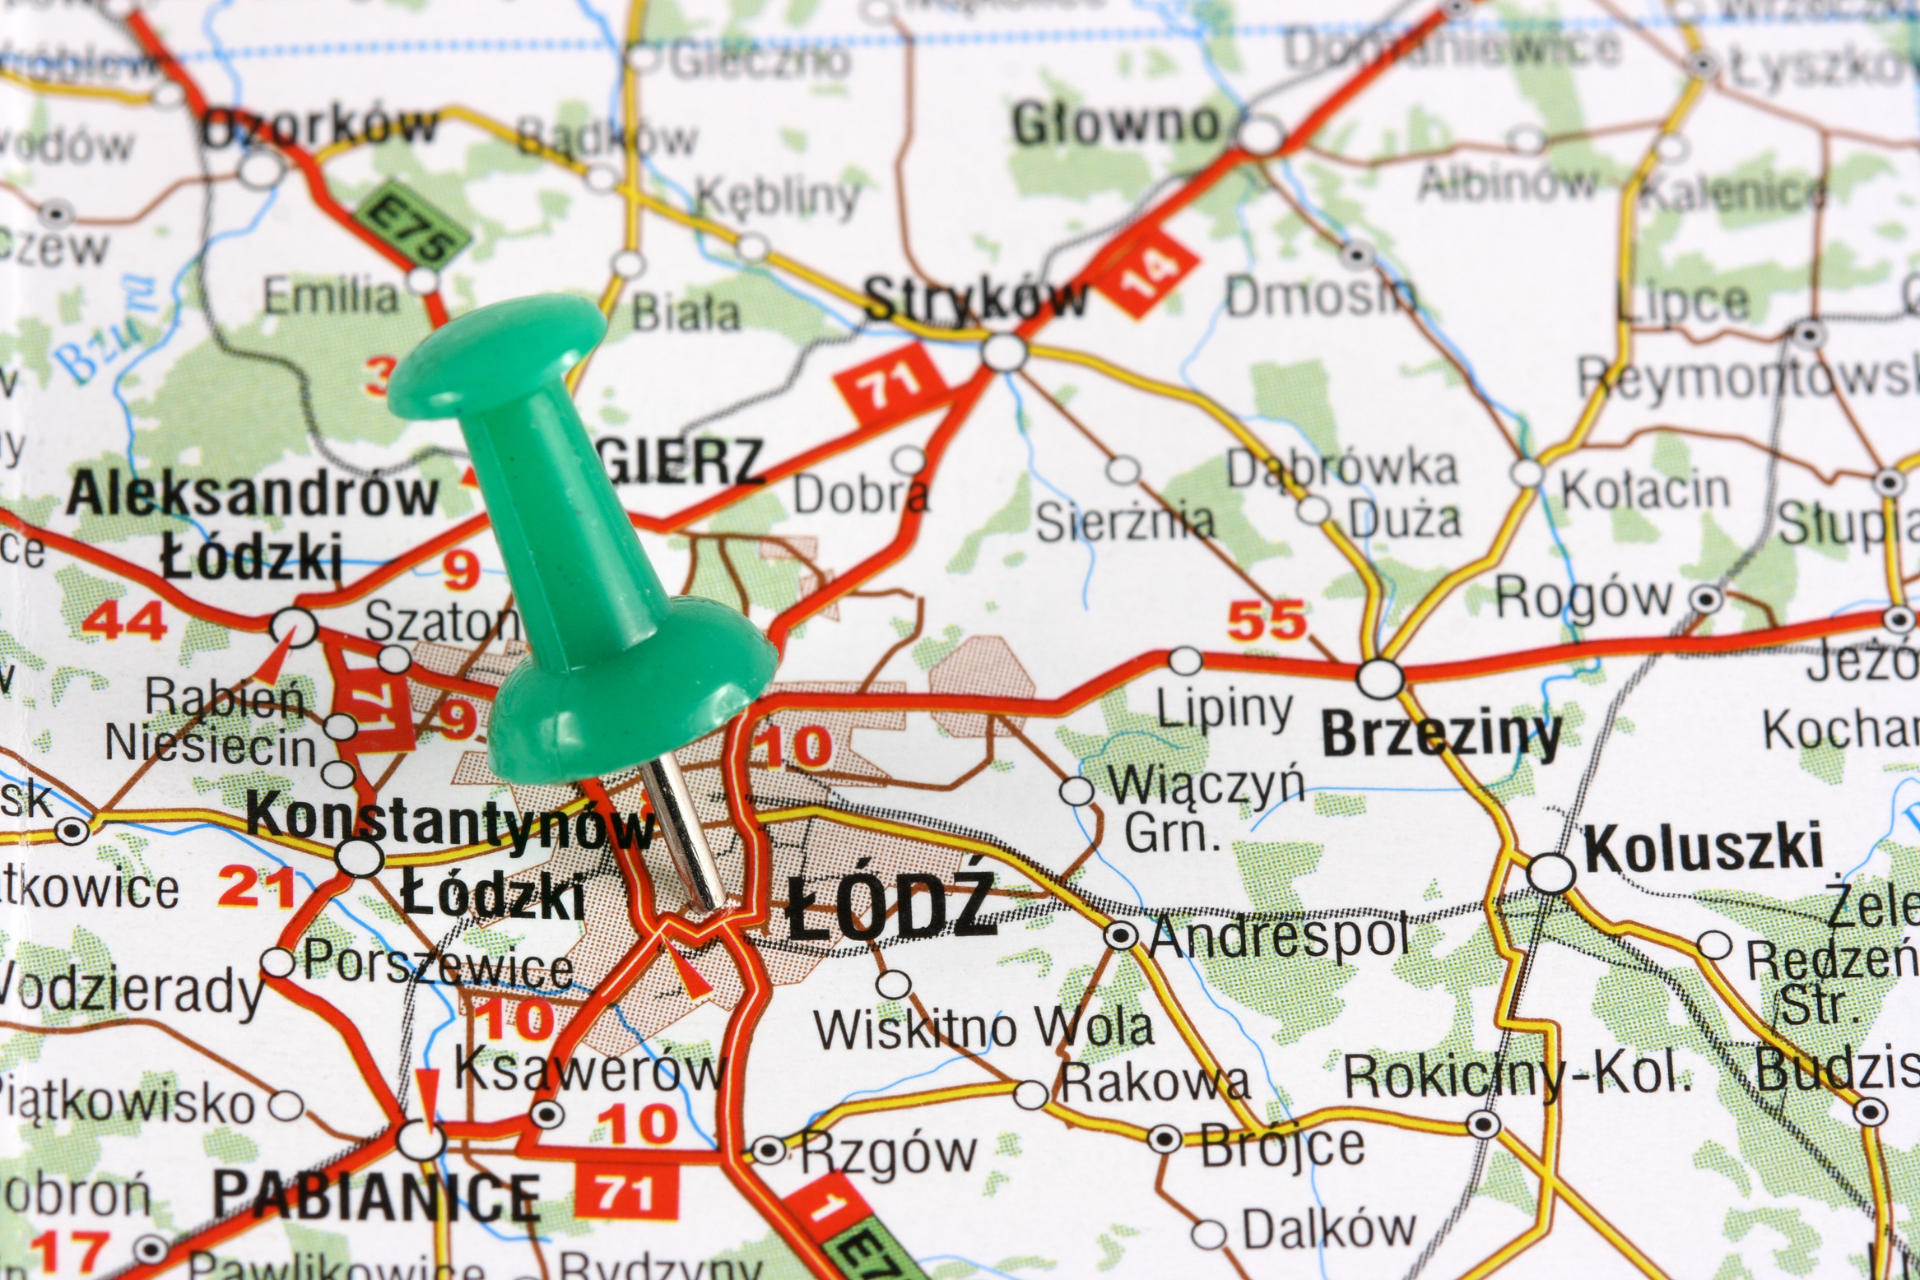 Mapa okolic Łodzi